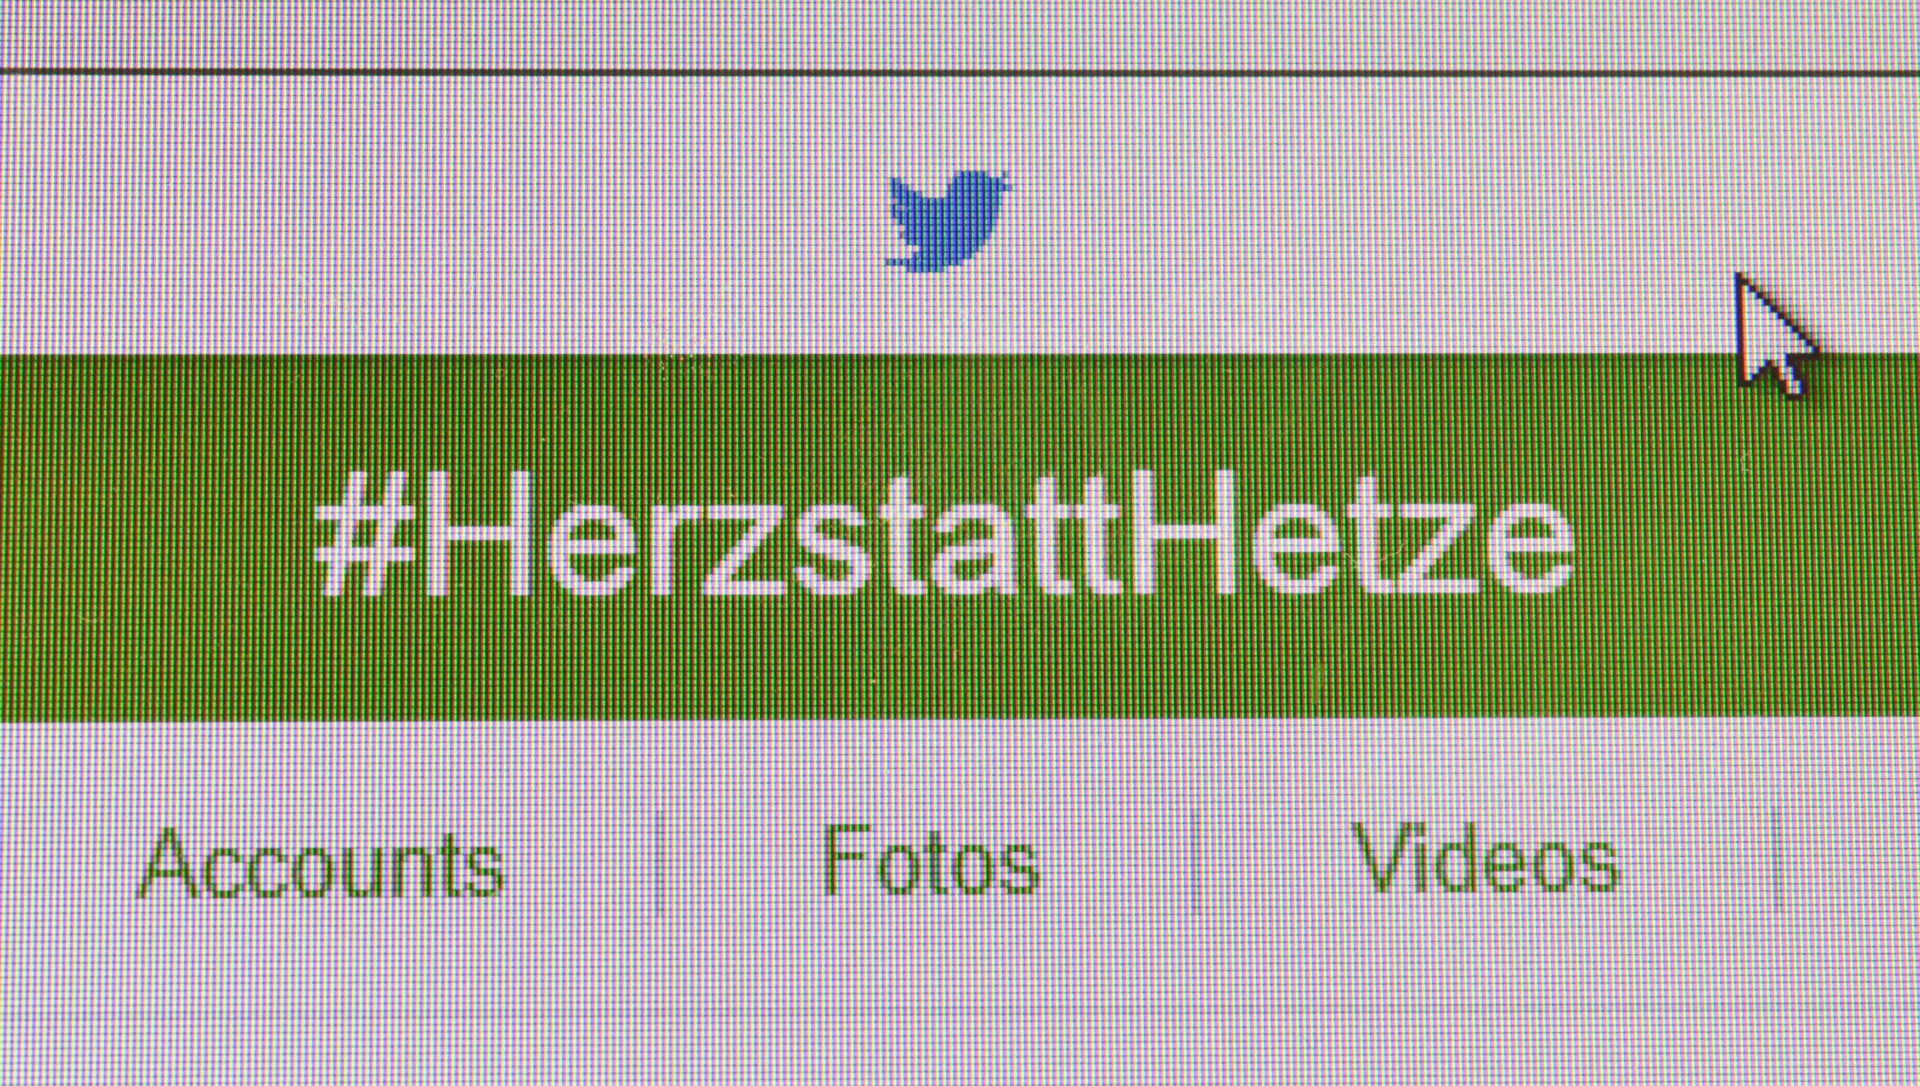 Hashtag "Herz statt Hetze" / #HerzstattHetze gegen Fremdenfeindlichkeit auf Twitter.